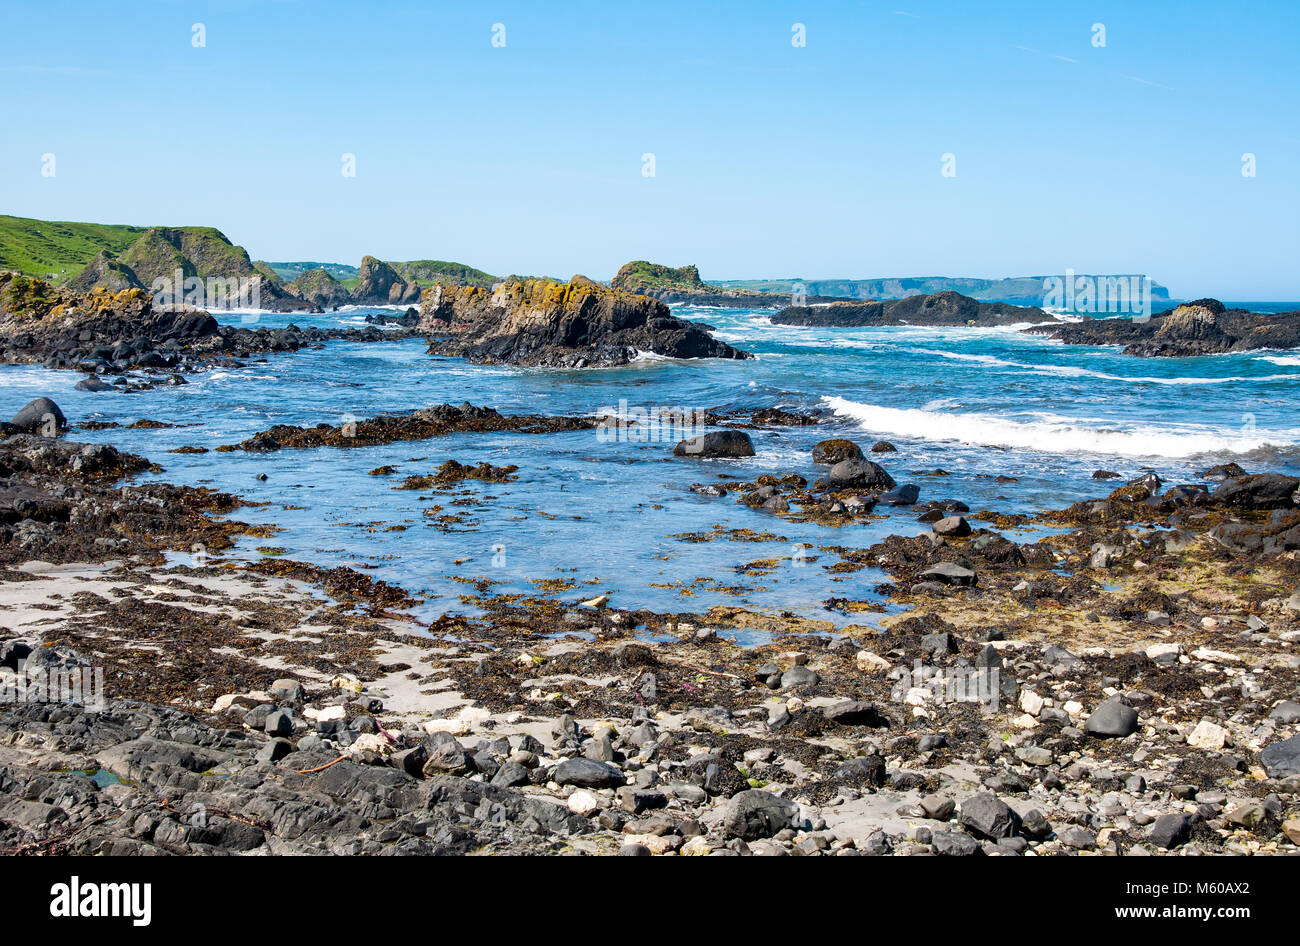 Les roches, falaises et côte Atlantique à Ballintoy Harbour, comté d'Antrim, en Irlande du Nord, Royaume-Uni. La place dans le jeu des trônes Banque D'Images